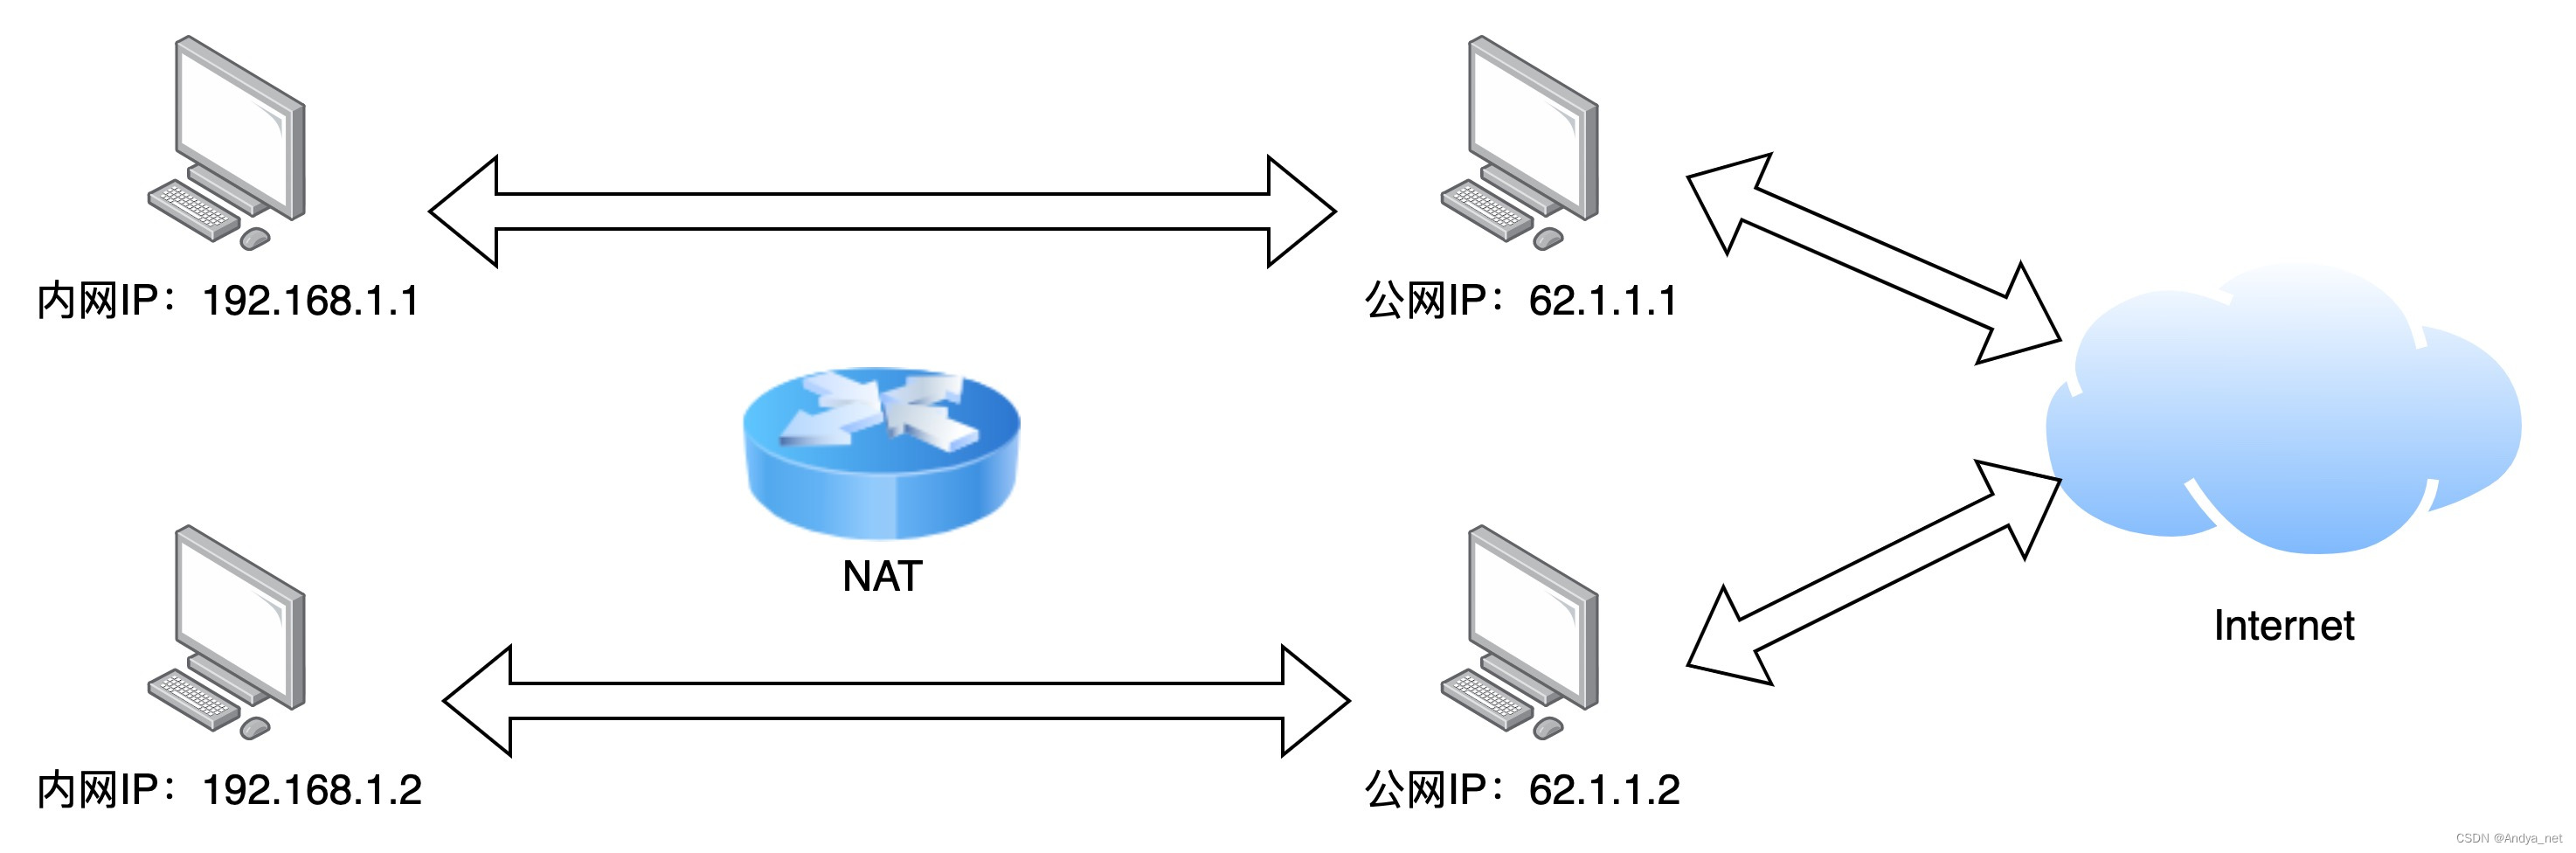 运维 | 关于IP网络相关的概念和原理_DHCP_02